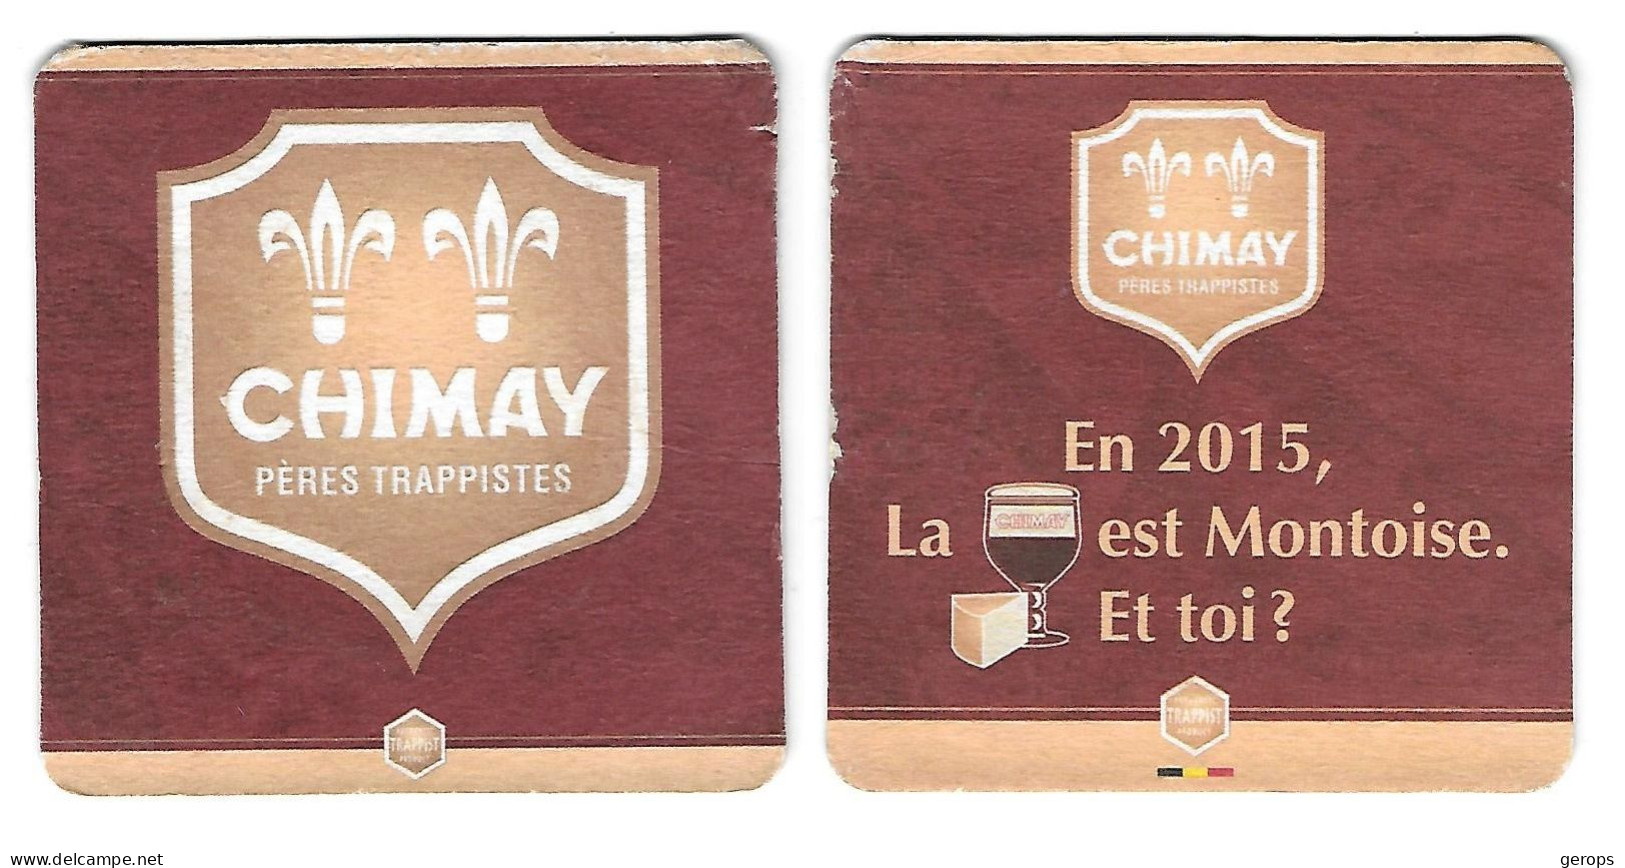 13a Chimay Péres Trappistes Rv 2015 (beschadigd) - Beer Mats